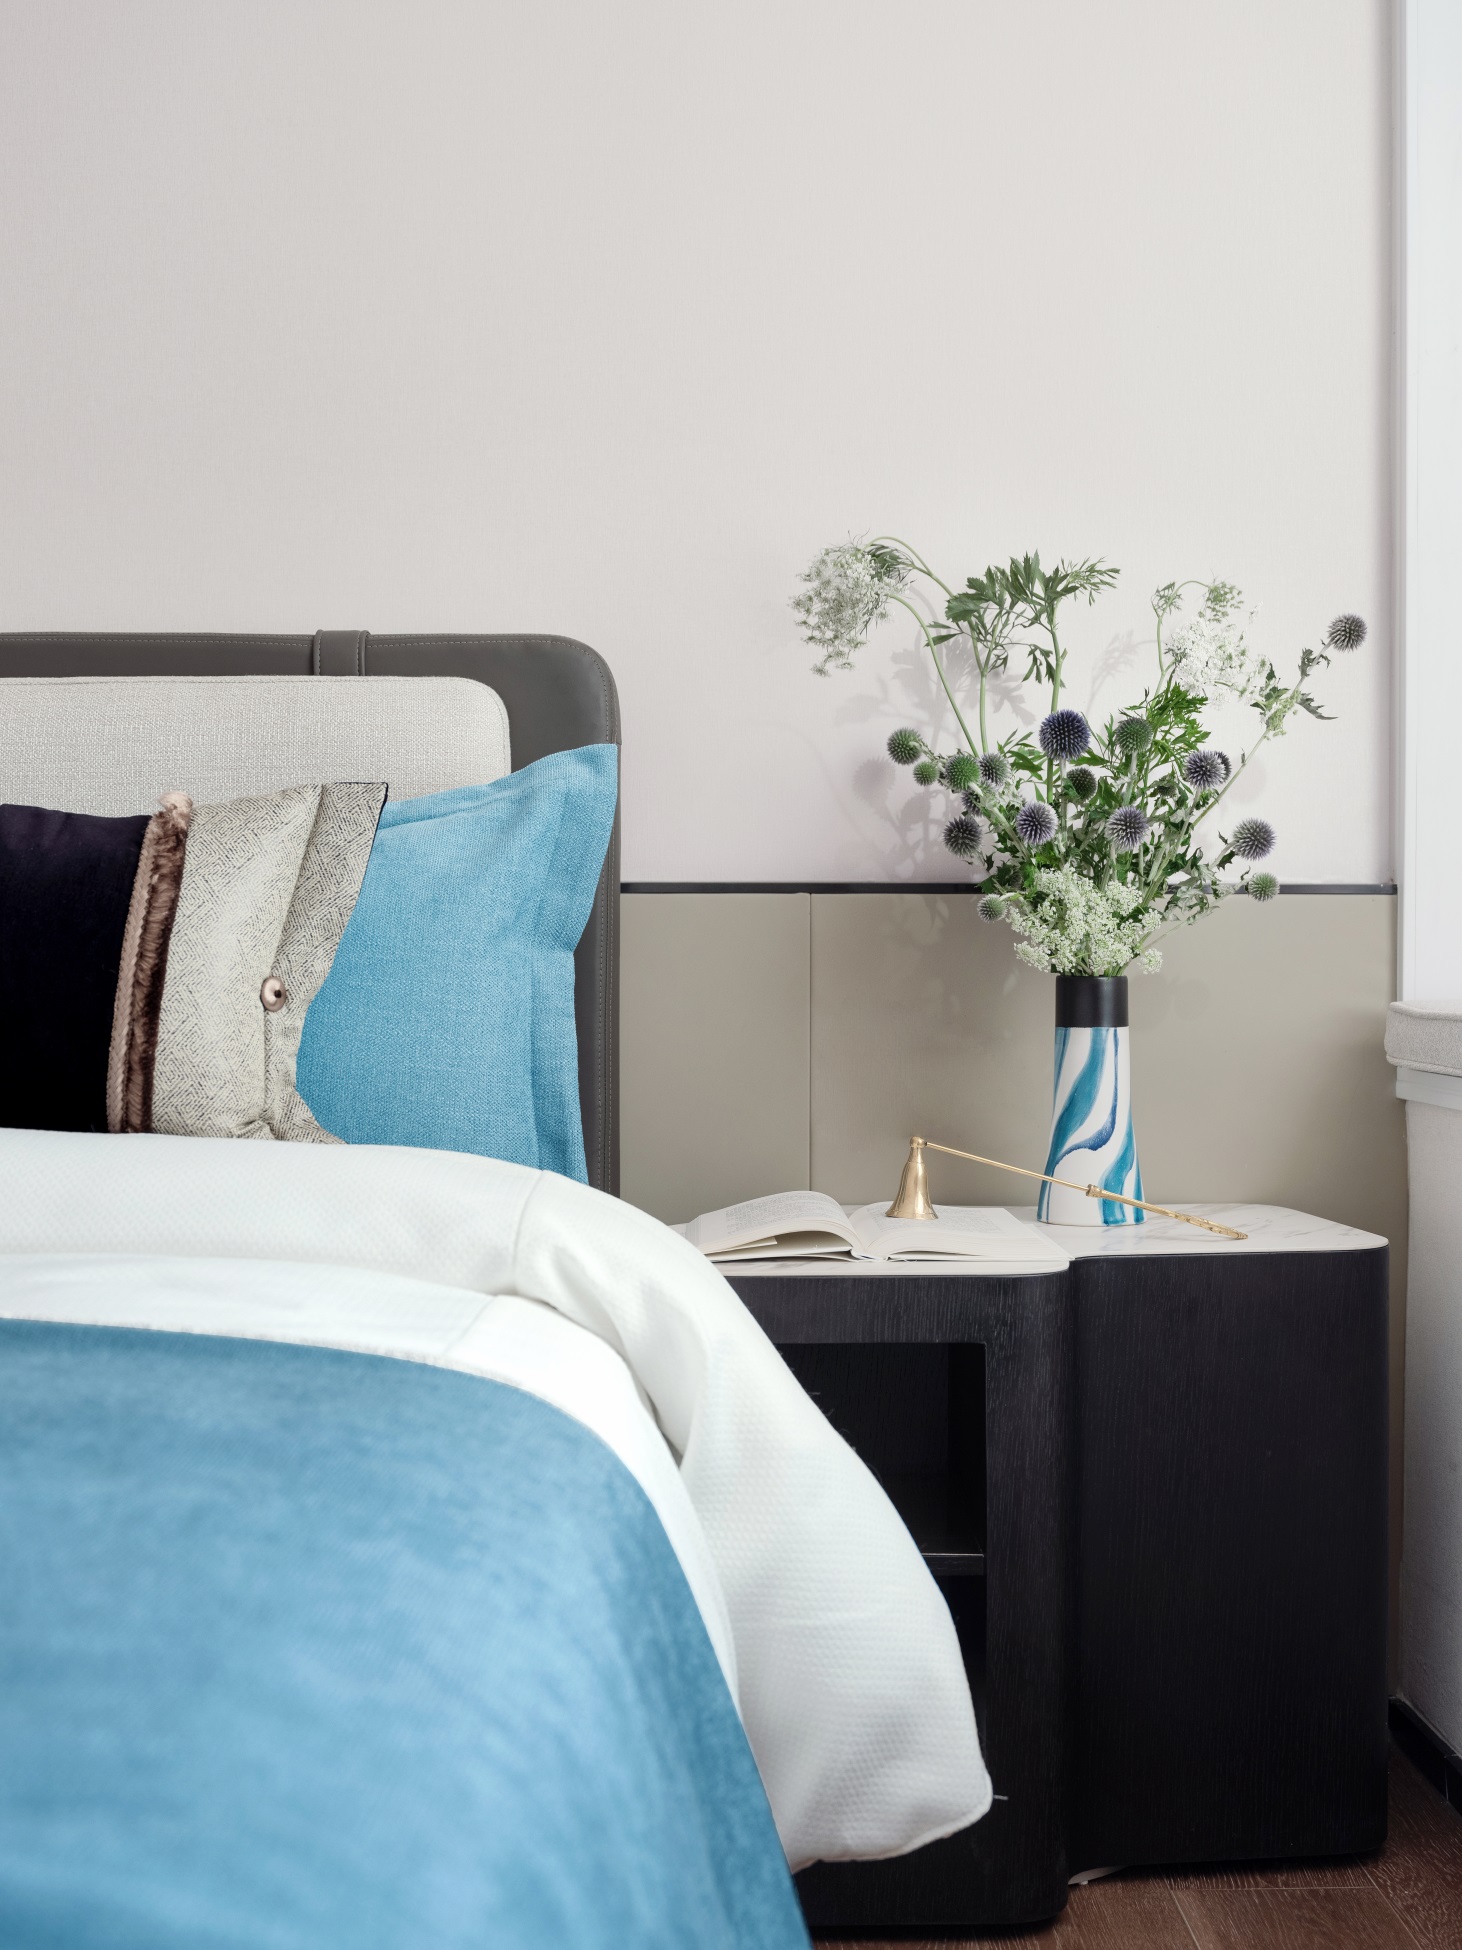 侧卧以优雅的蓝色床品点缀整个卧室空间，让空间更加静谧和典雅。